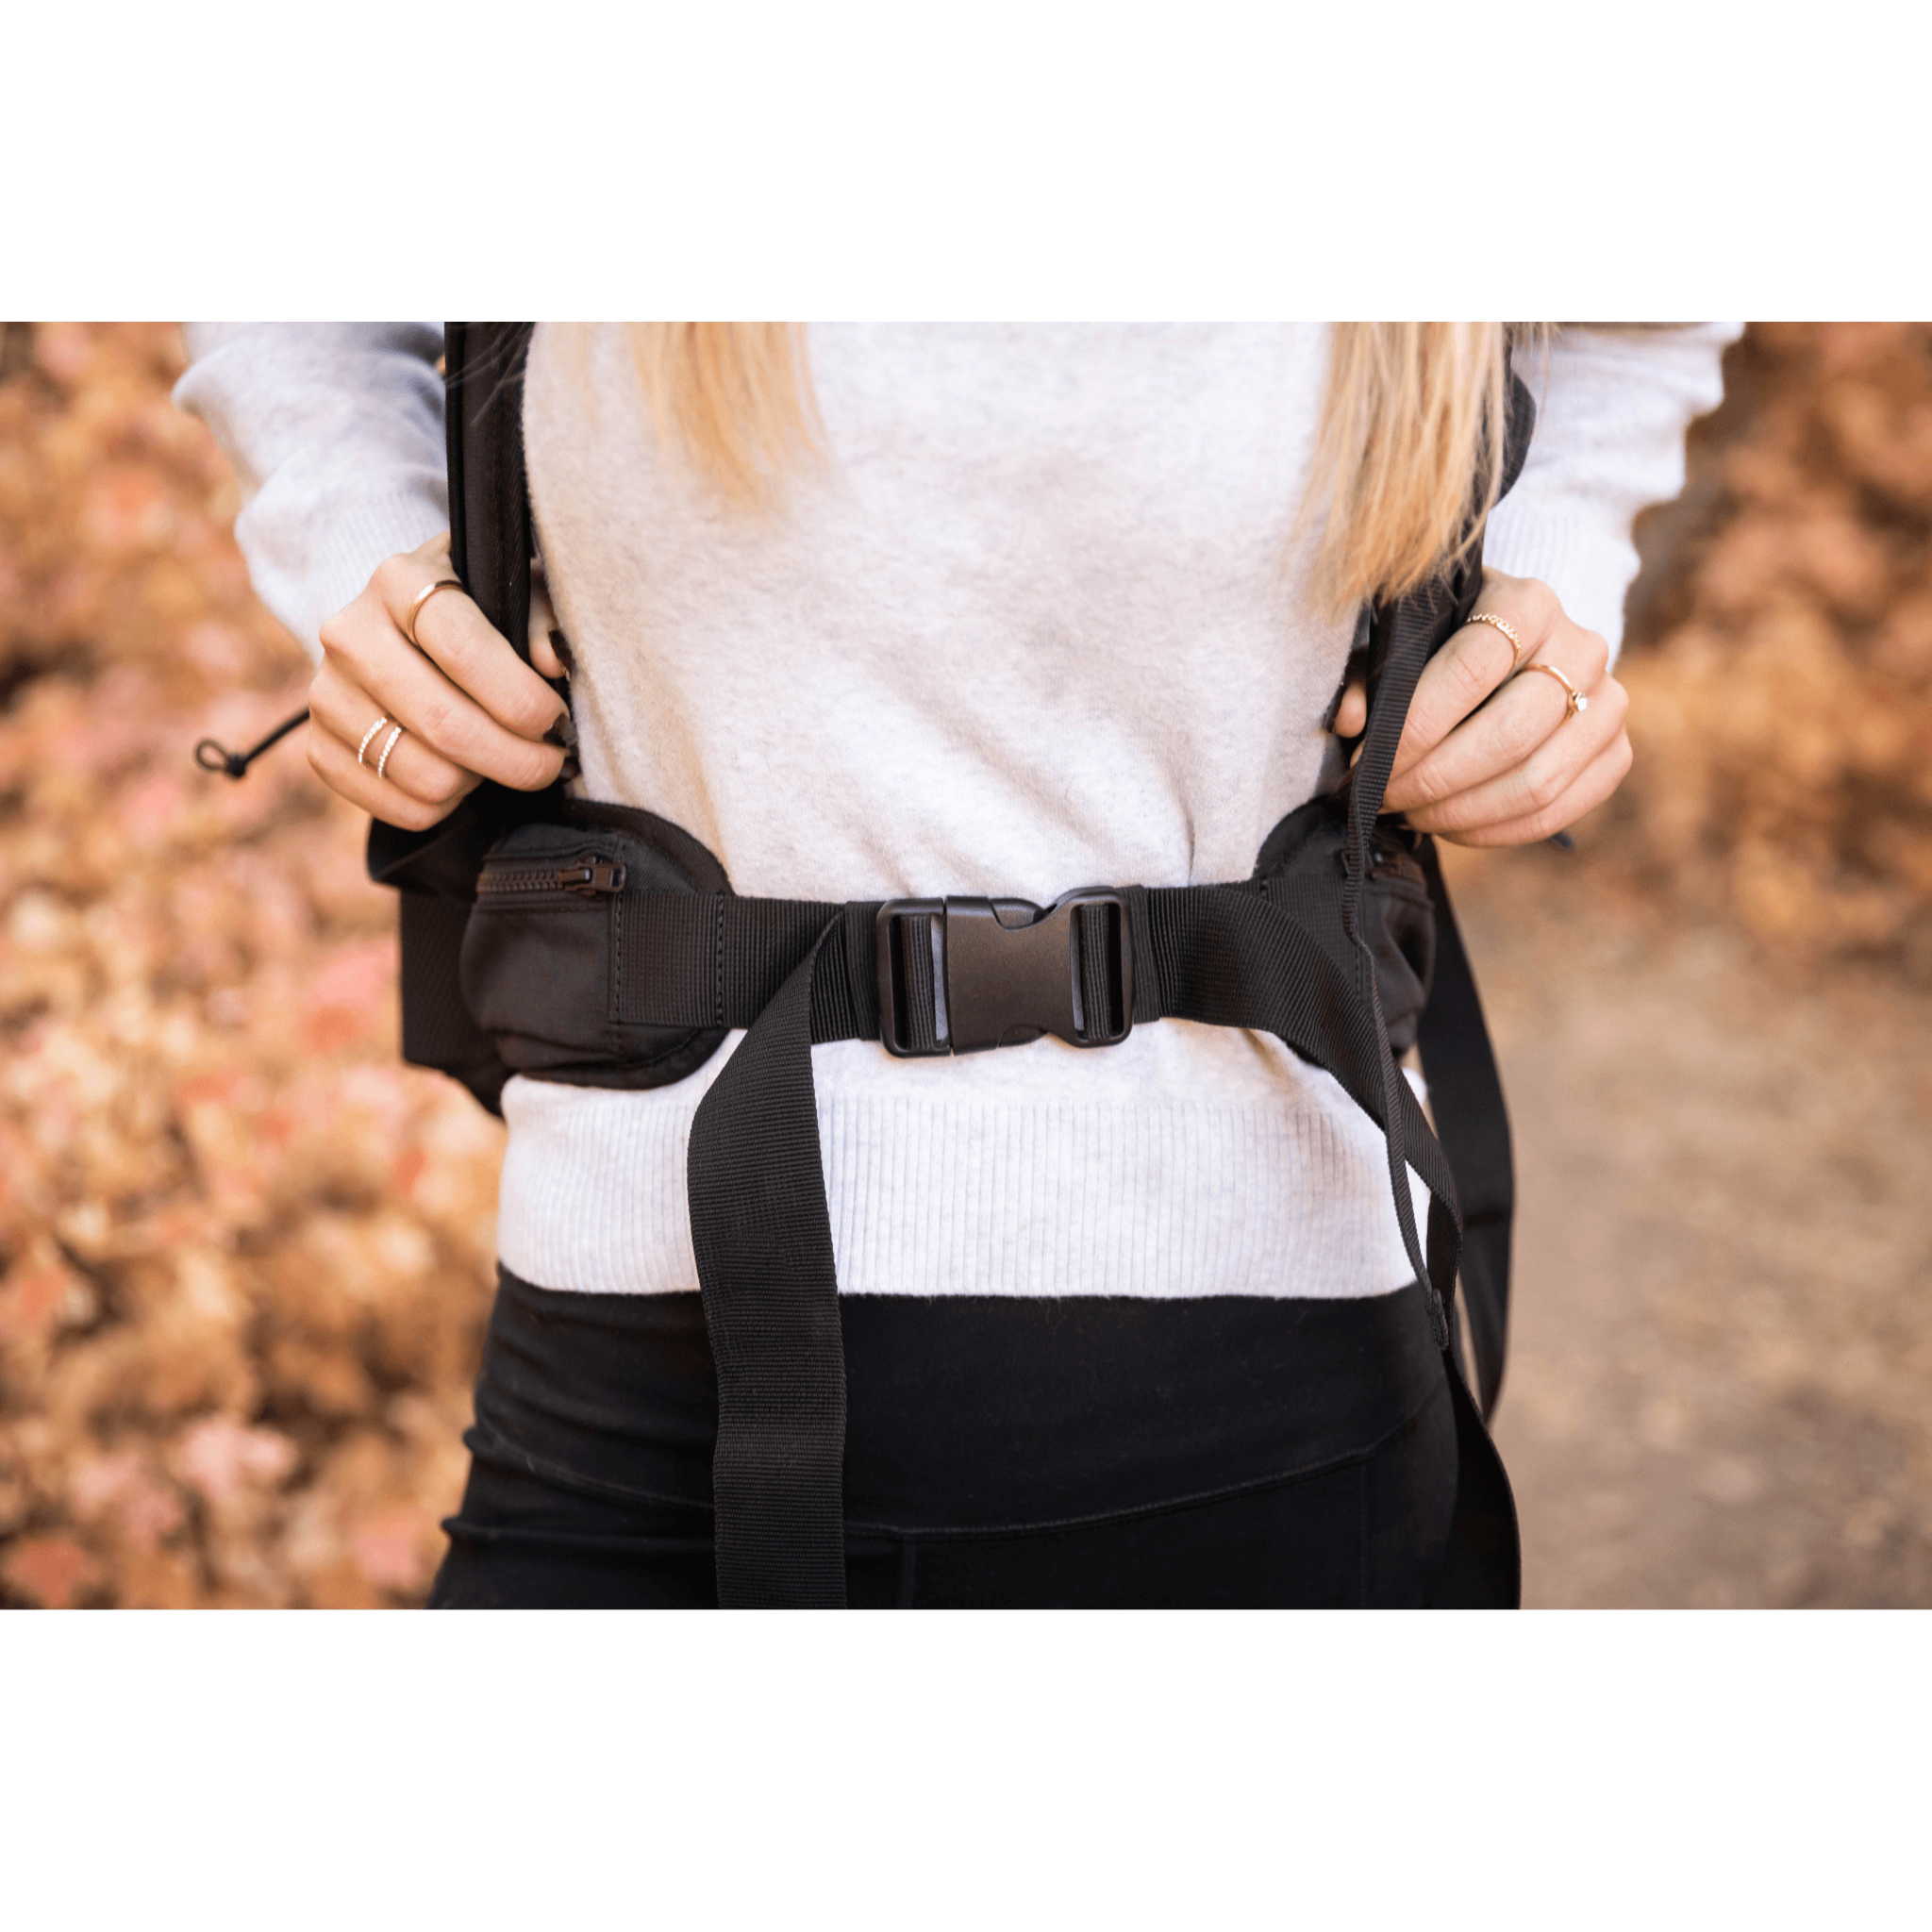 Klearance Knavigate waist belt bag